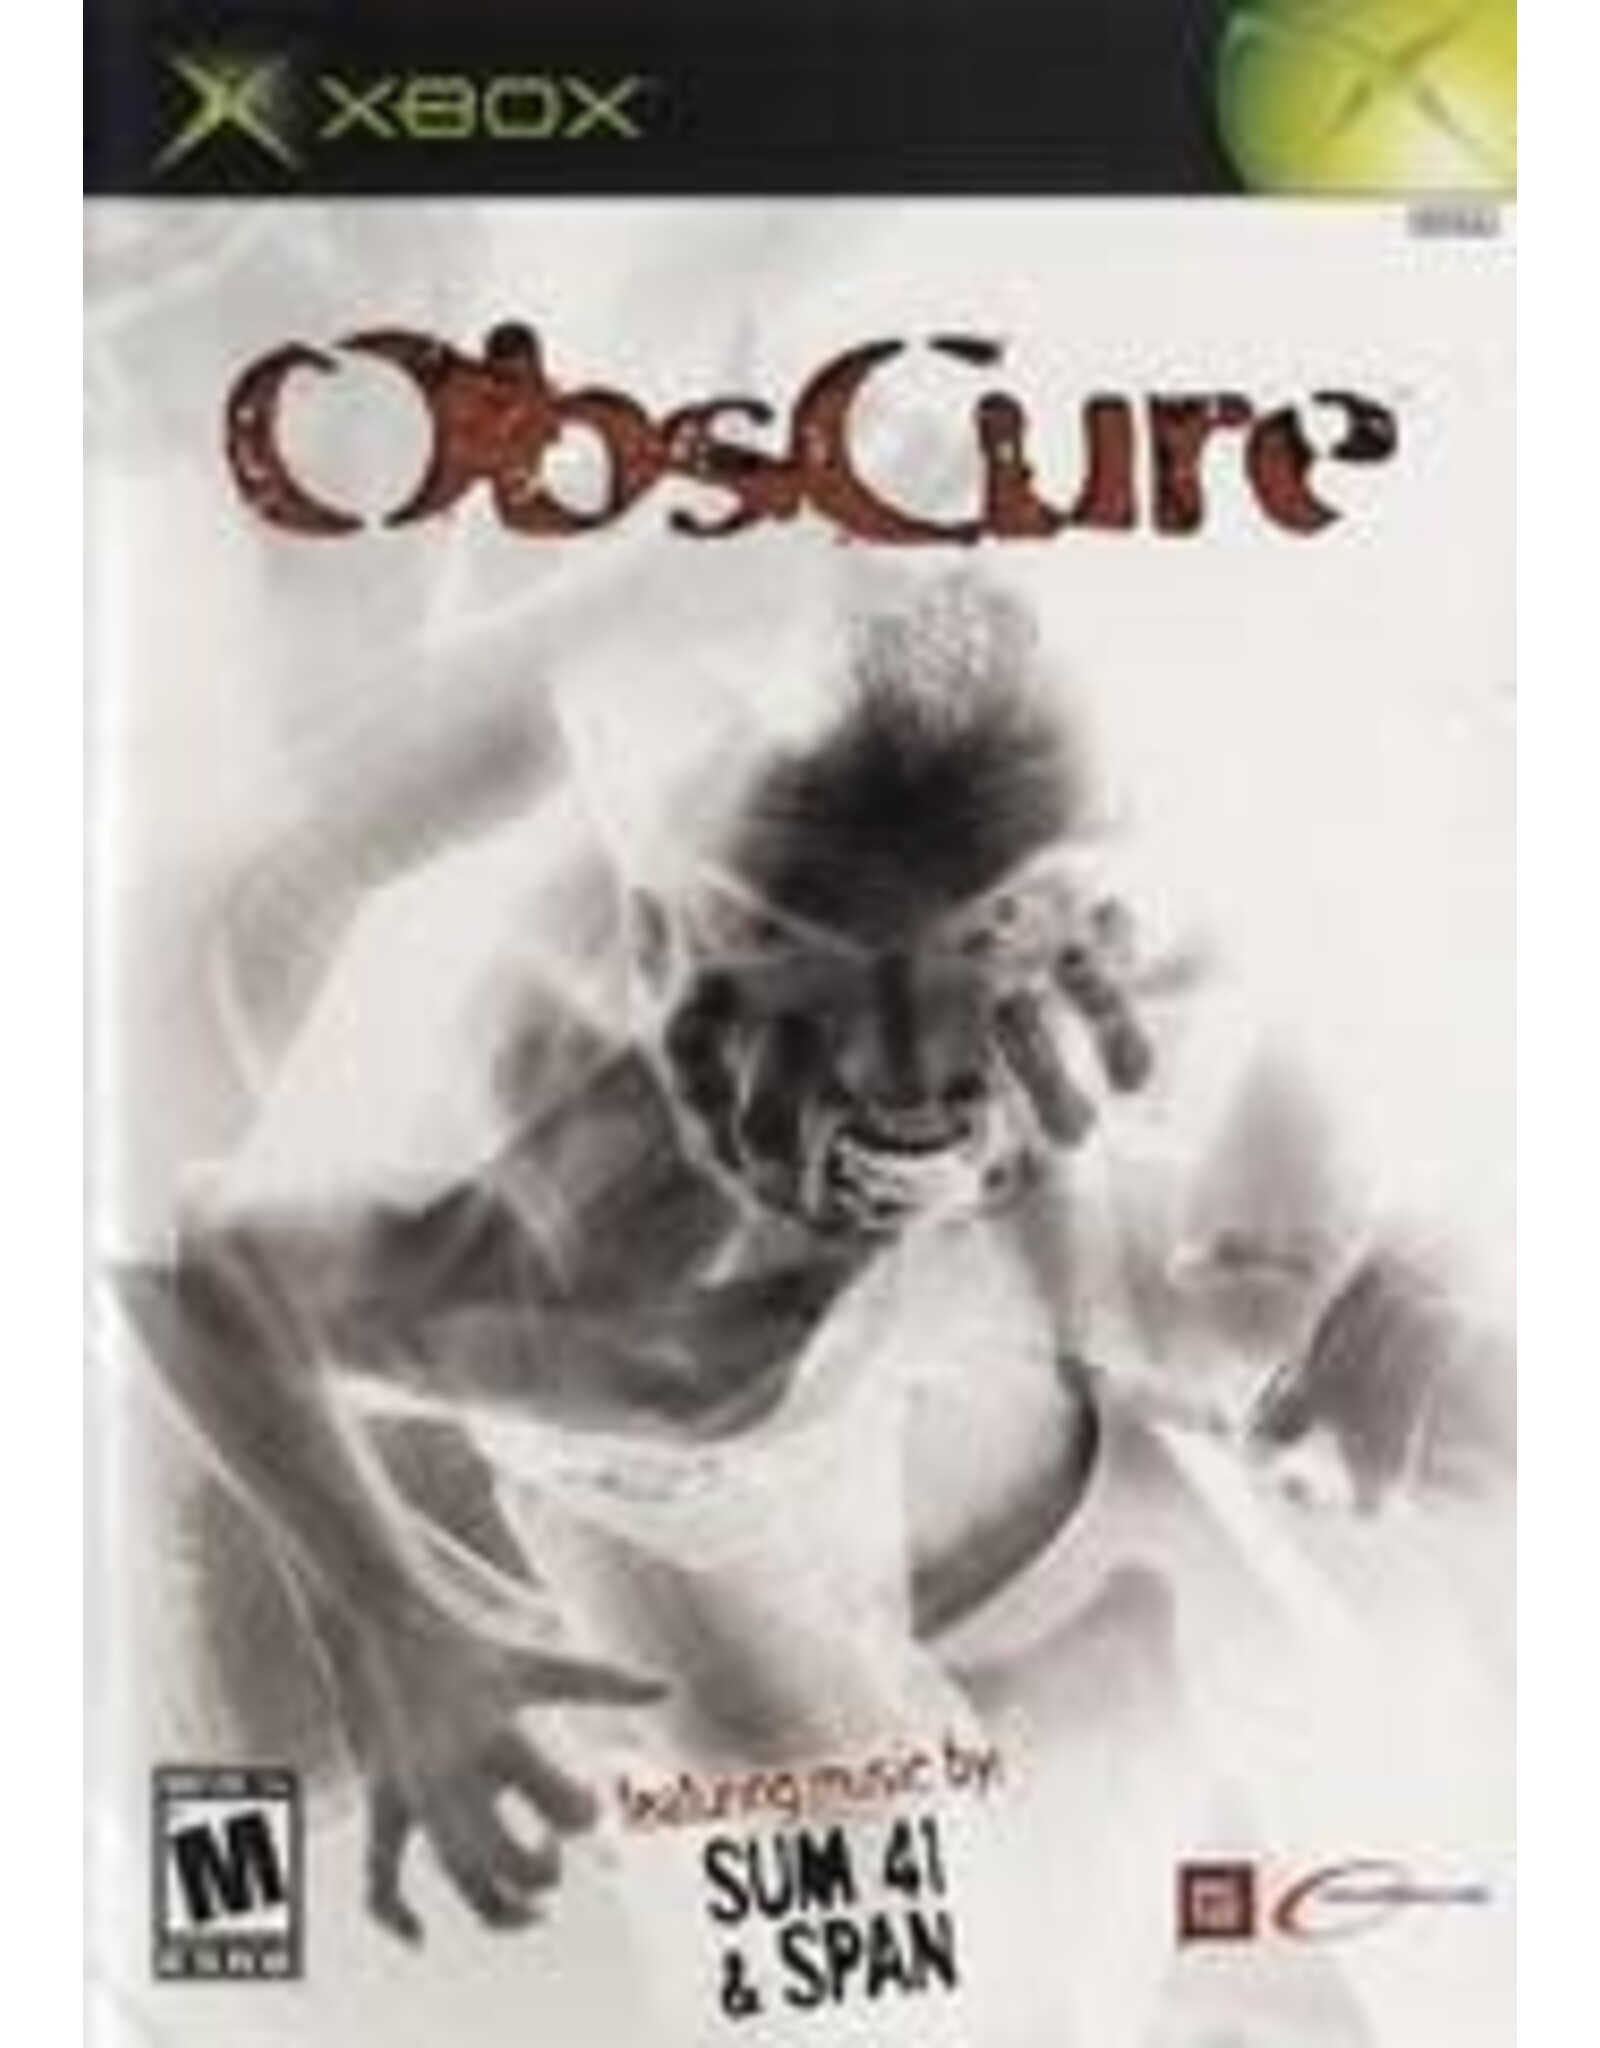 Xbox Obscure (CiB)